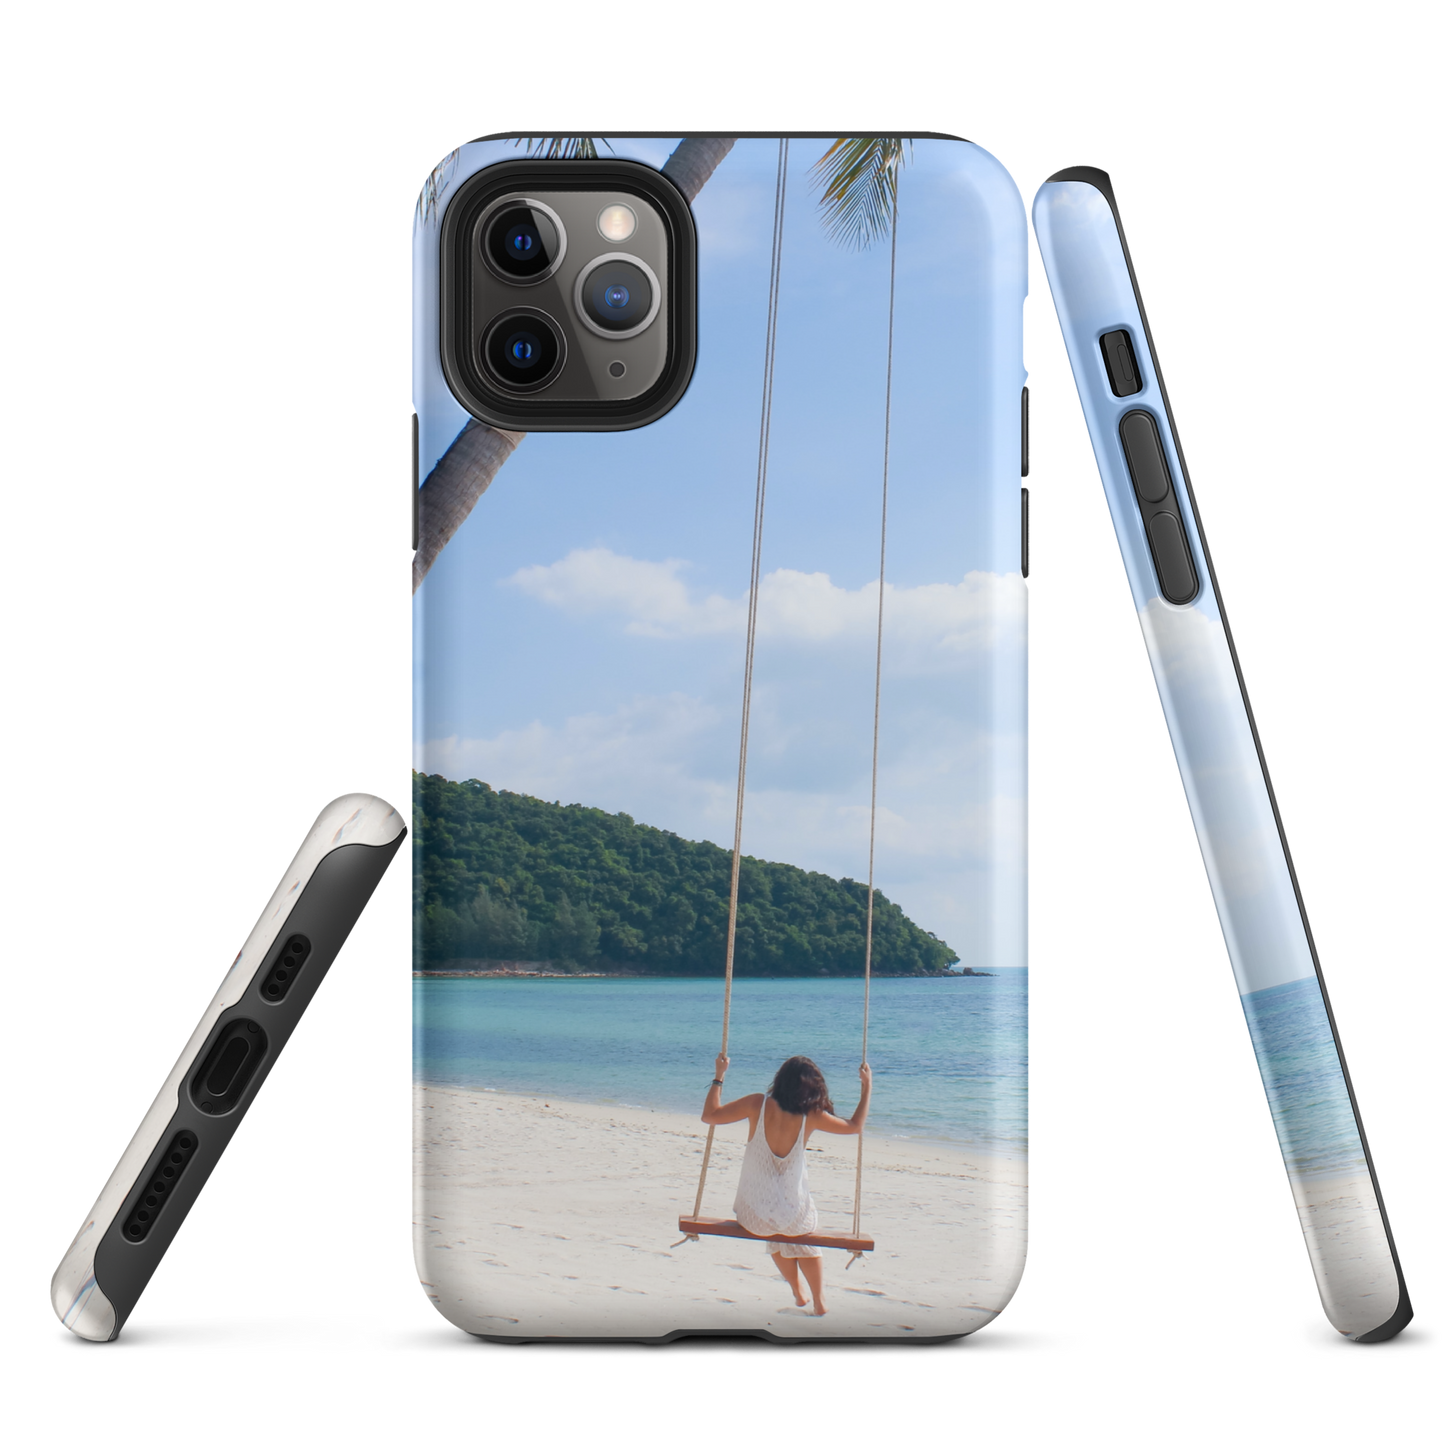 Protégez votre iPhone® avec style : coque rigide Summer Beach pour des aventures sans fin.